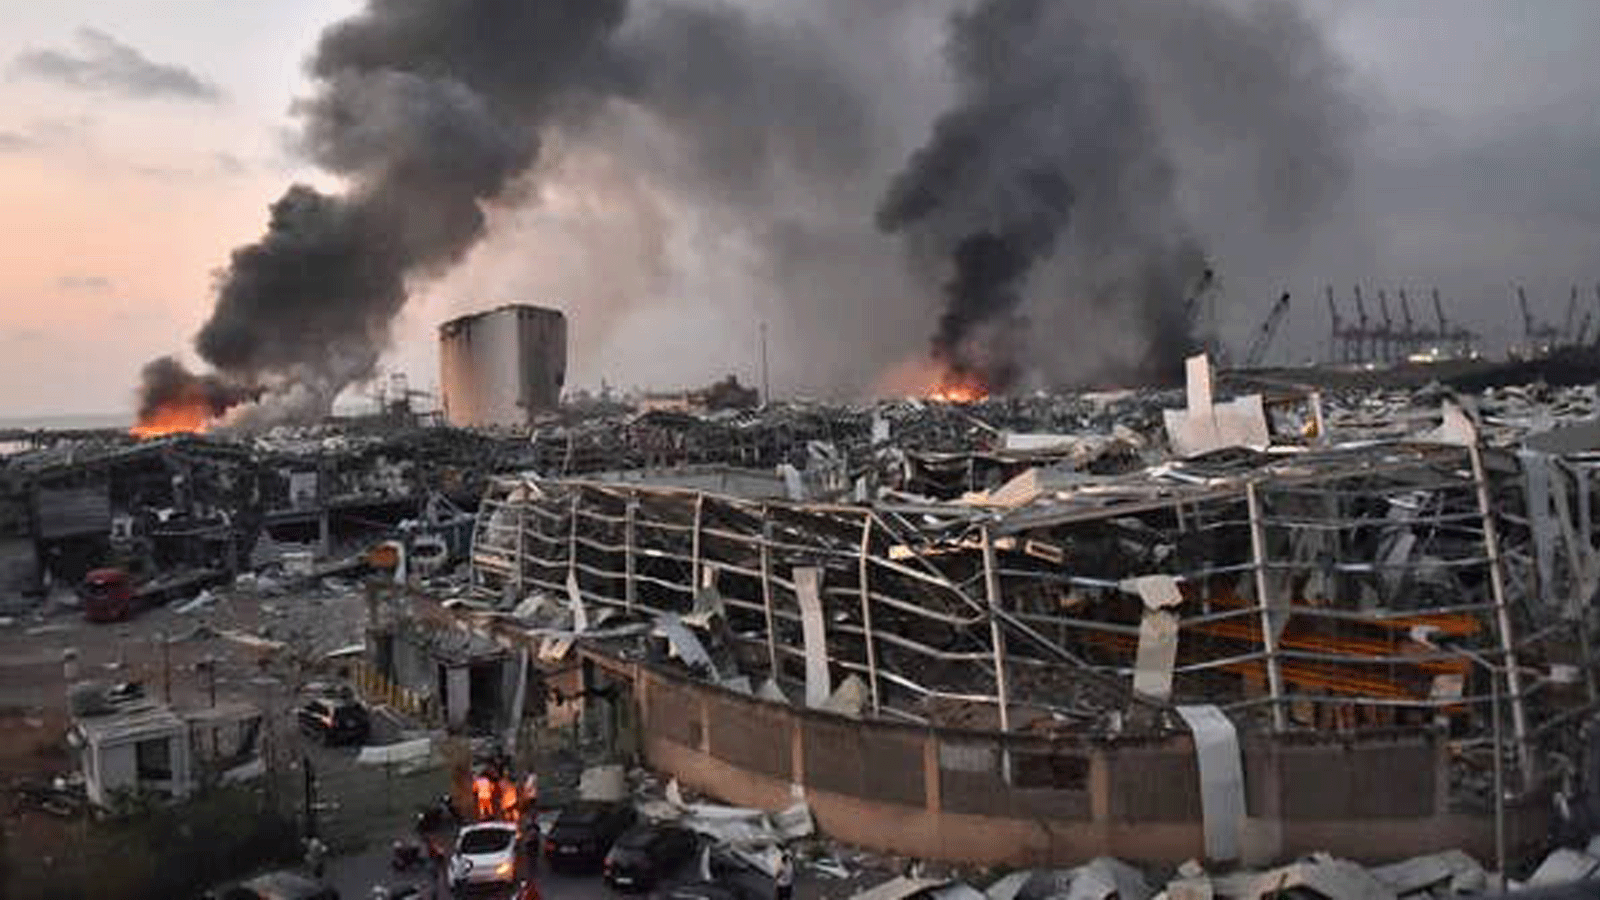 تُظهر الصورة التي التُقِطت في 4 أغسطس / آب 2020 منظرًا عامًا لمشهد انفجار في ميناء العاصمة اللبنانية بيروت